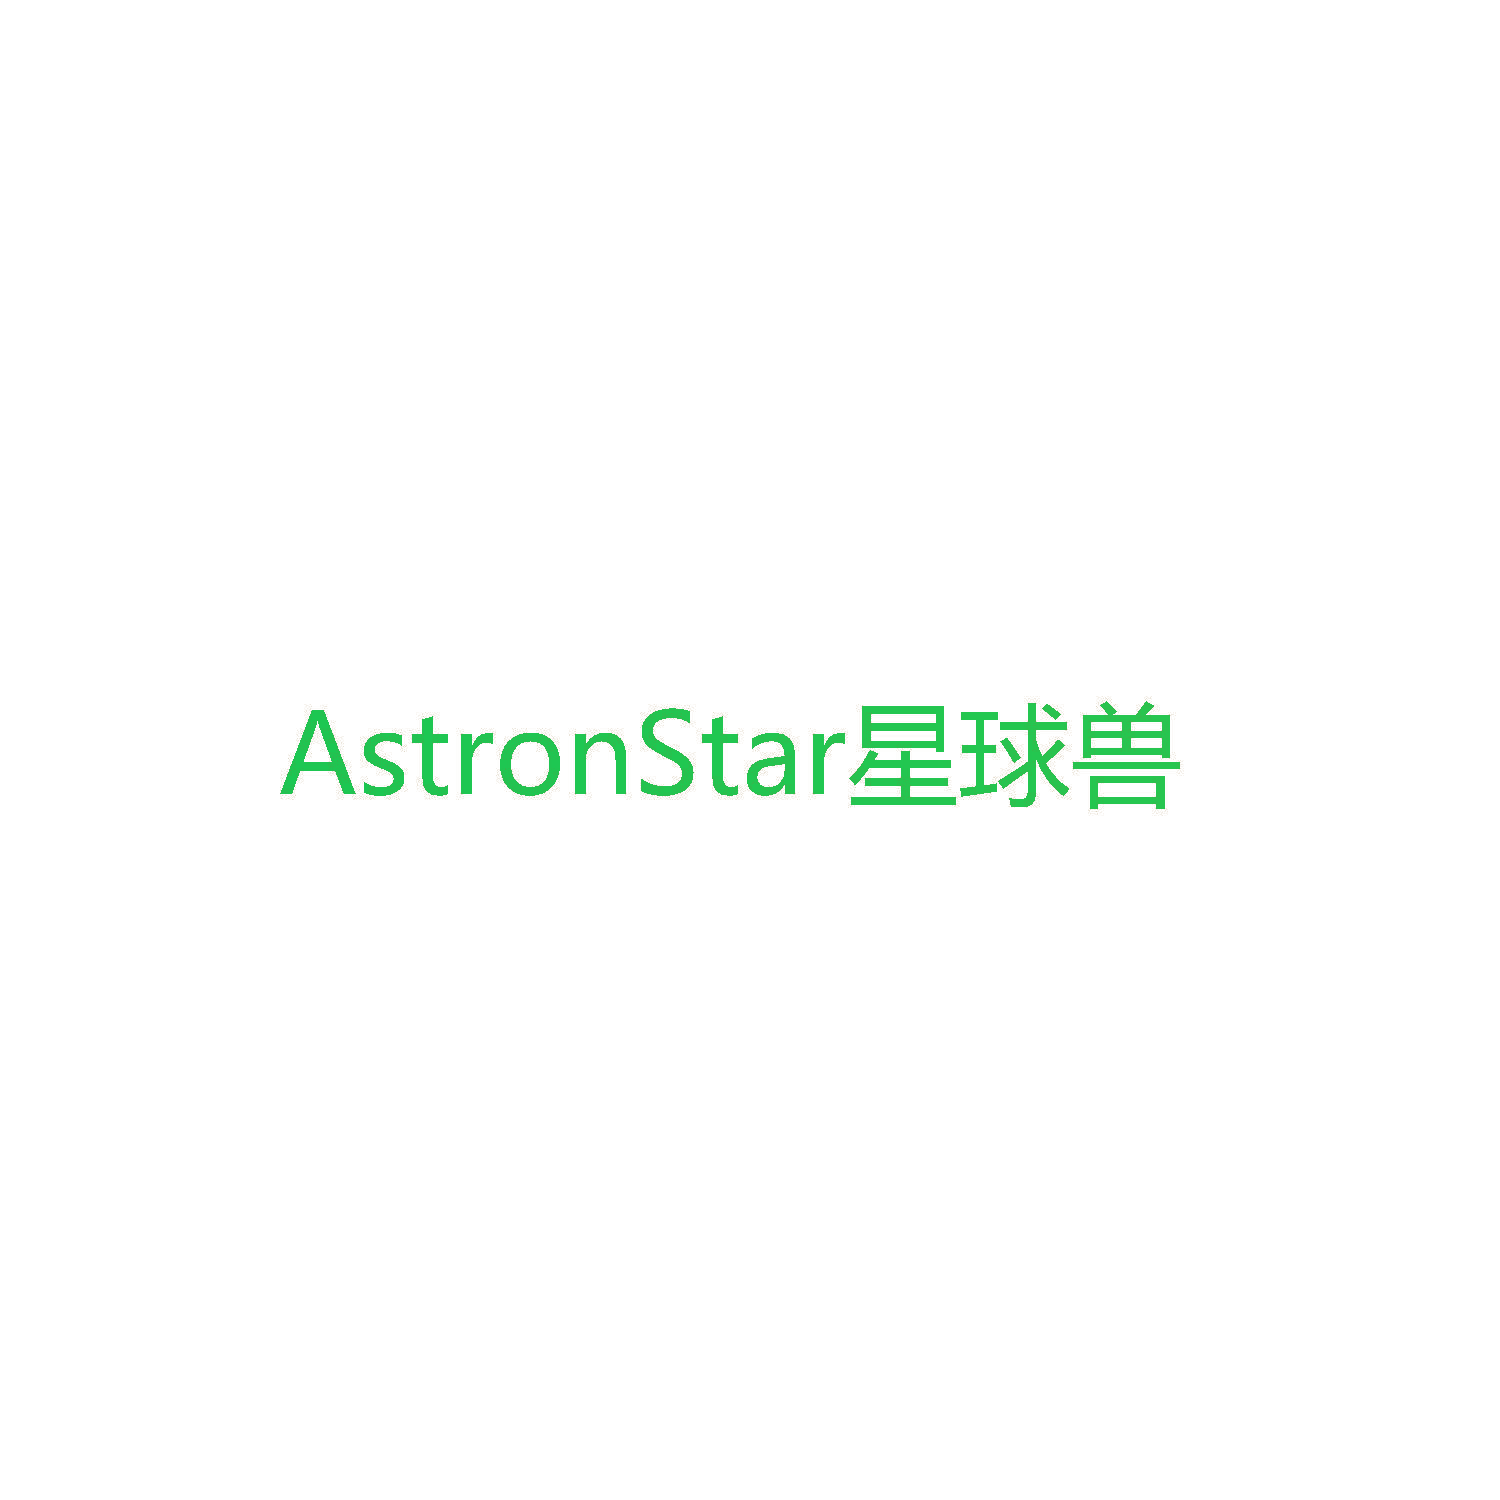 AstronStar星球兽